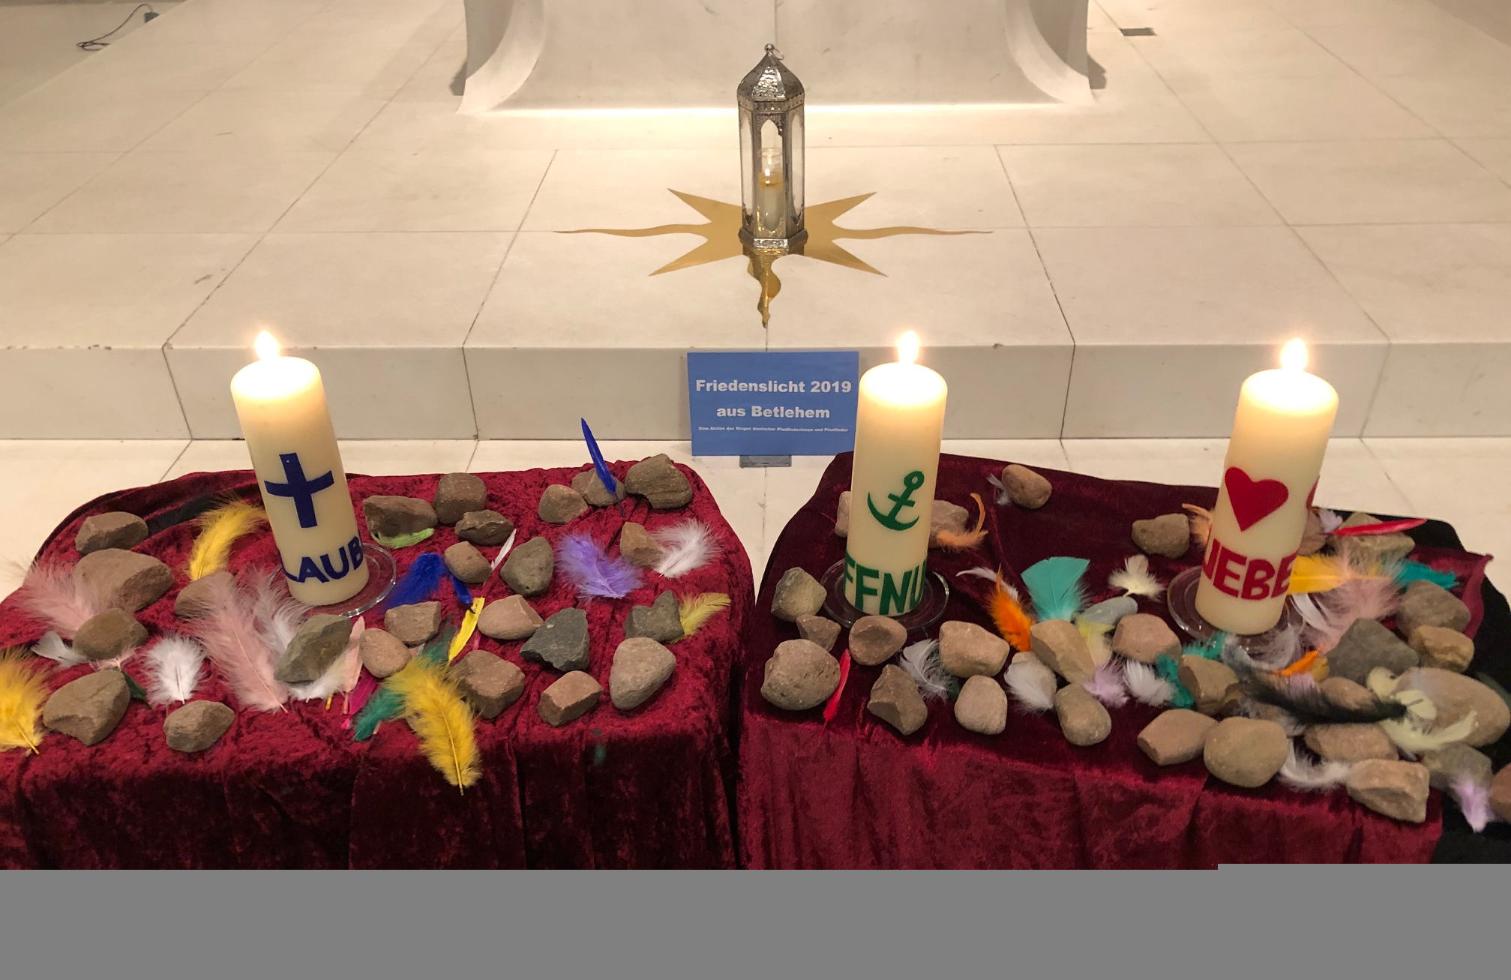 In der ökumenischen Andacht entzündet: Drei Kerzen für Glaube, Hoffnung und Liebe (c) Stephanie Veith 2019